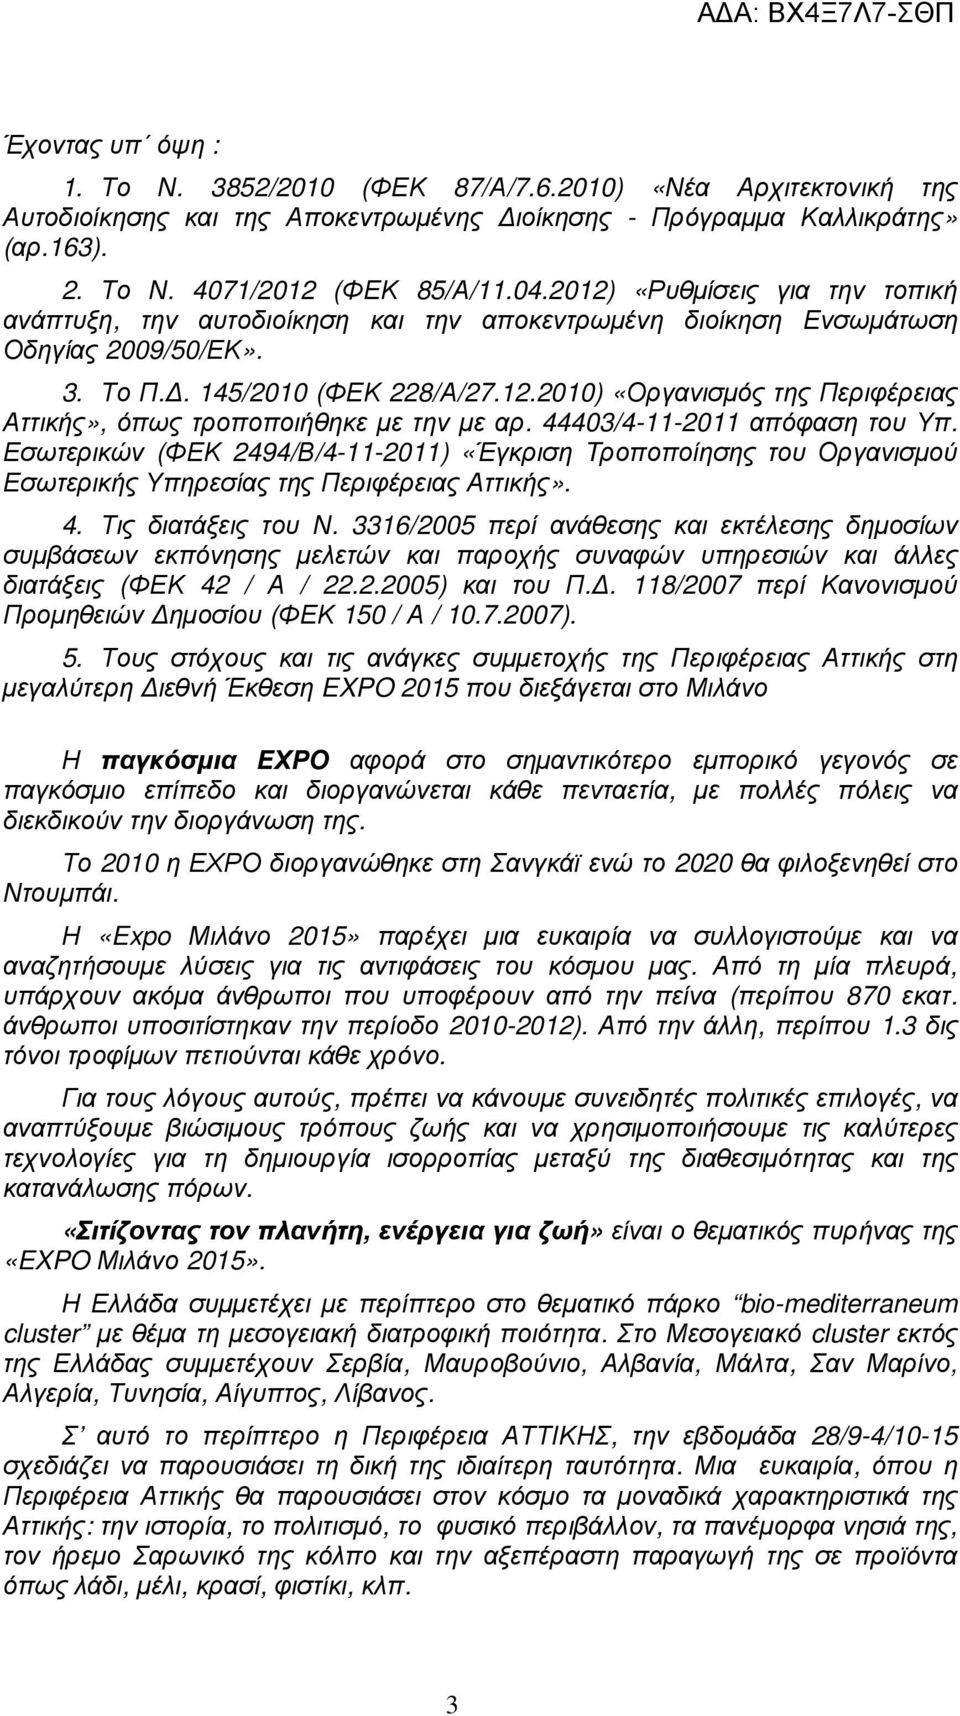 44403/4-11-2011 απόφαση του Υπ. Εσωτερικών (ΦΕΚ 2494/Β/4-11-2011) «Έγκριση Tροποποίησης του Οργανισµού Εσωτερικής Υπηρεσίας της Περιφέρειας Αττικής». 4. Τις διατάξεις του Ν.